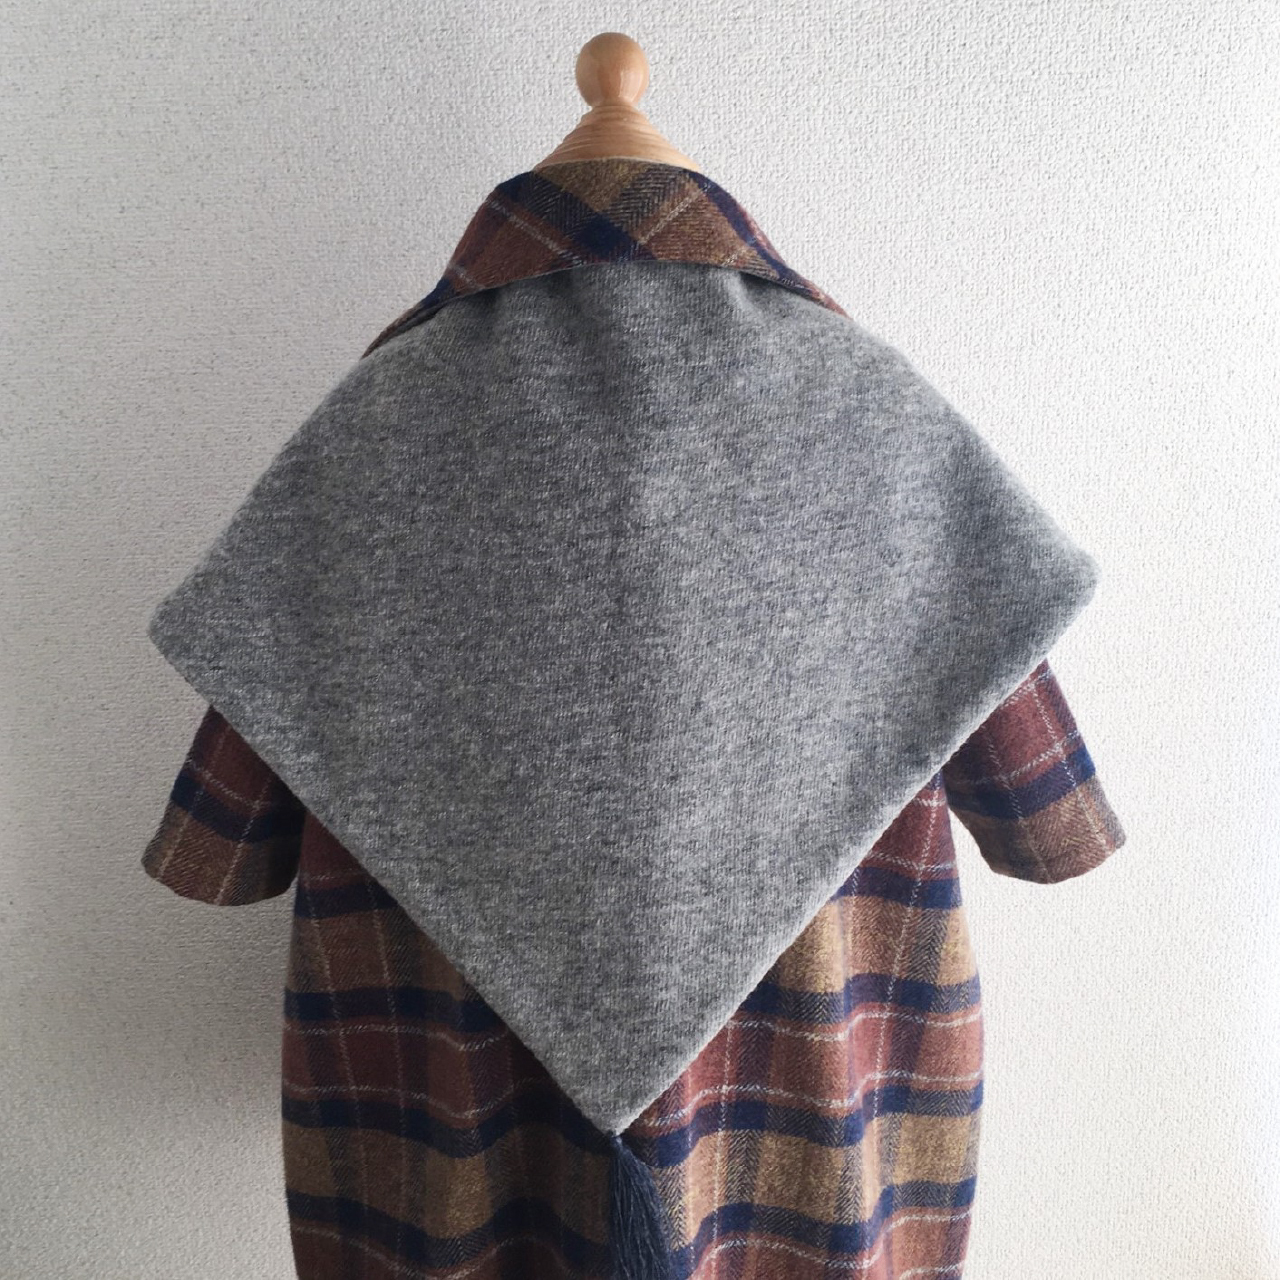 三角ストール 型紙と作り方のセット Acｰ46 子供服の型紙ショップ Tsukuro ツクロ